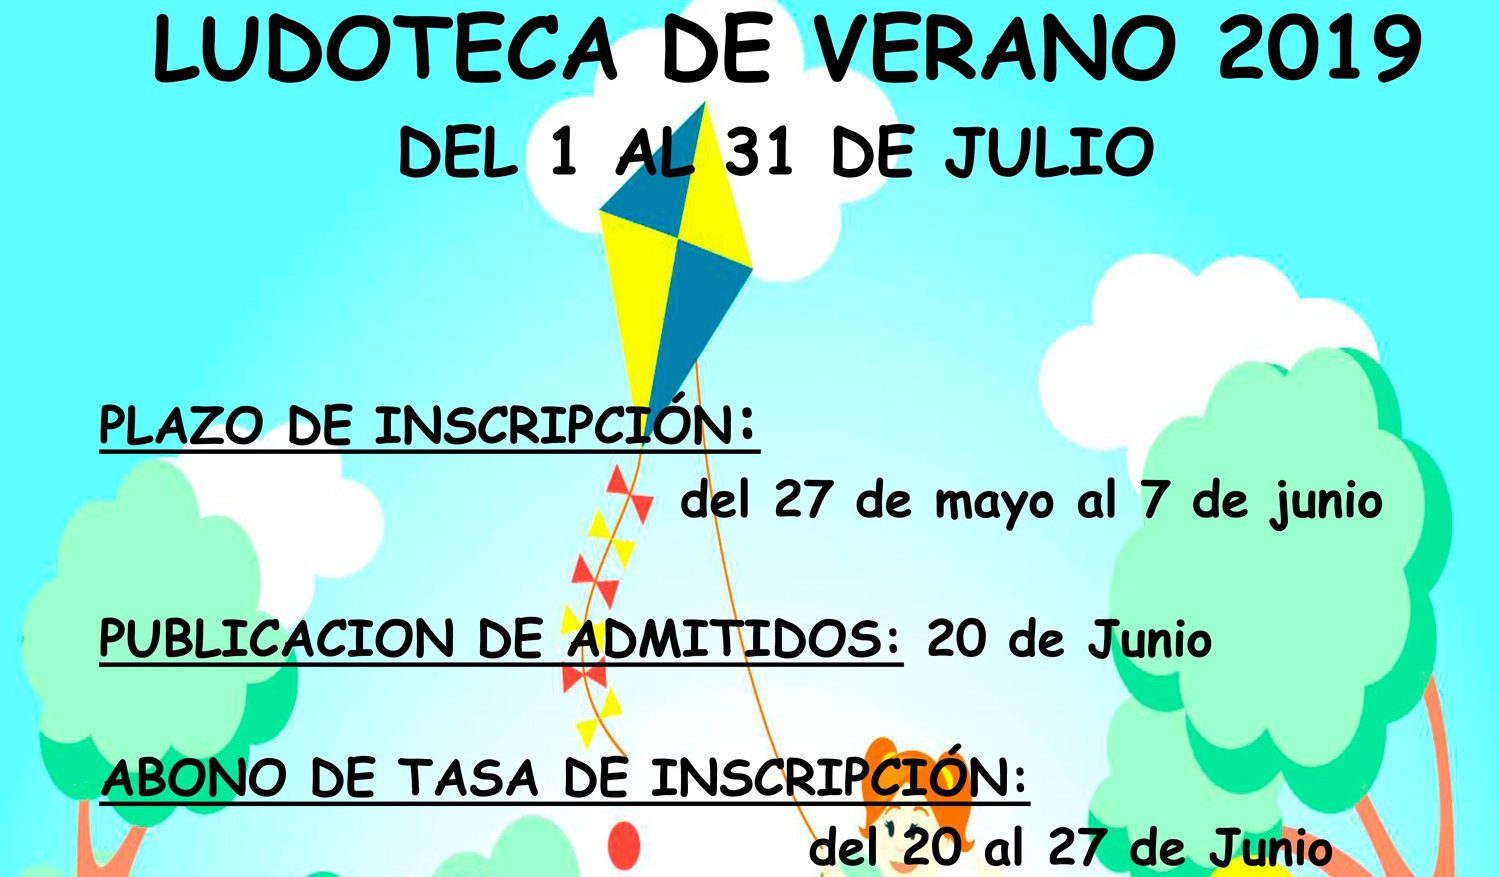 El lunes se abre el plazo de inscripciones en las Ludotecas de Verano que se llevarán a cabo en el mes de julio